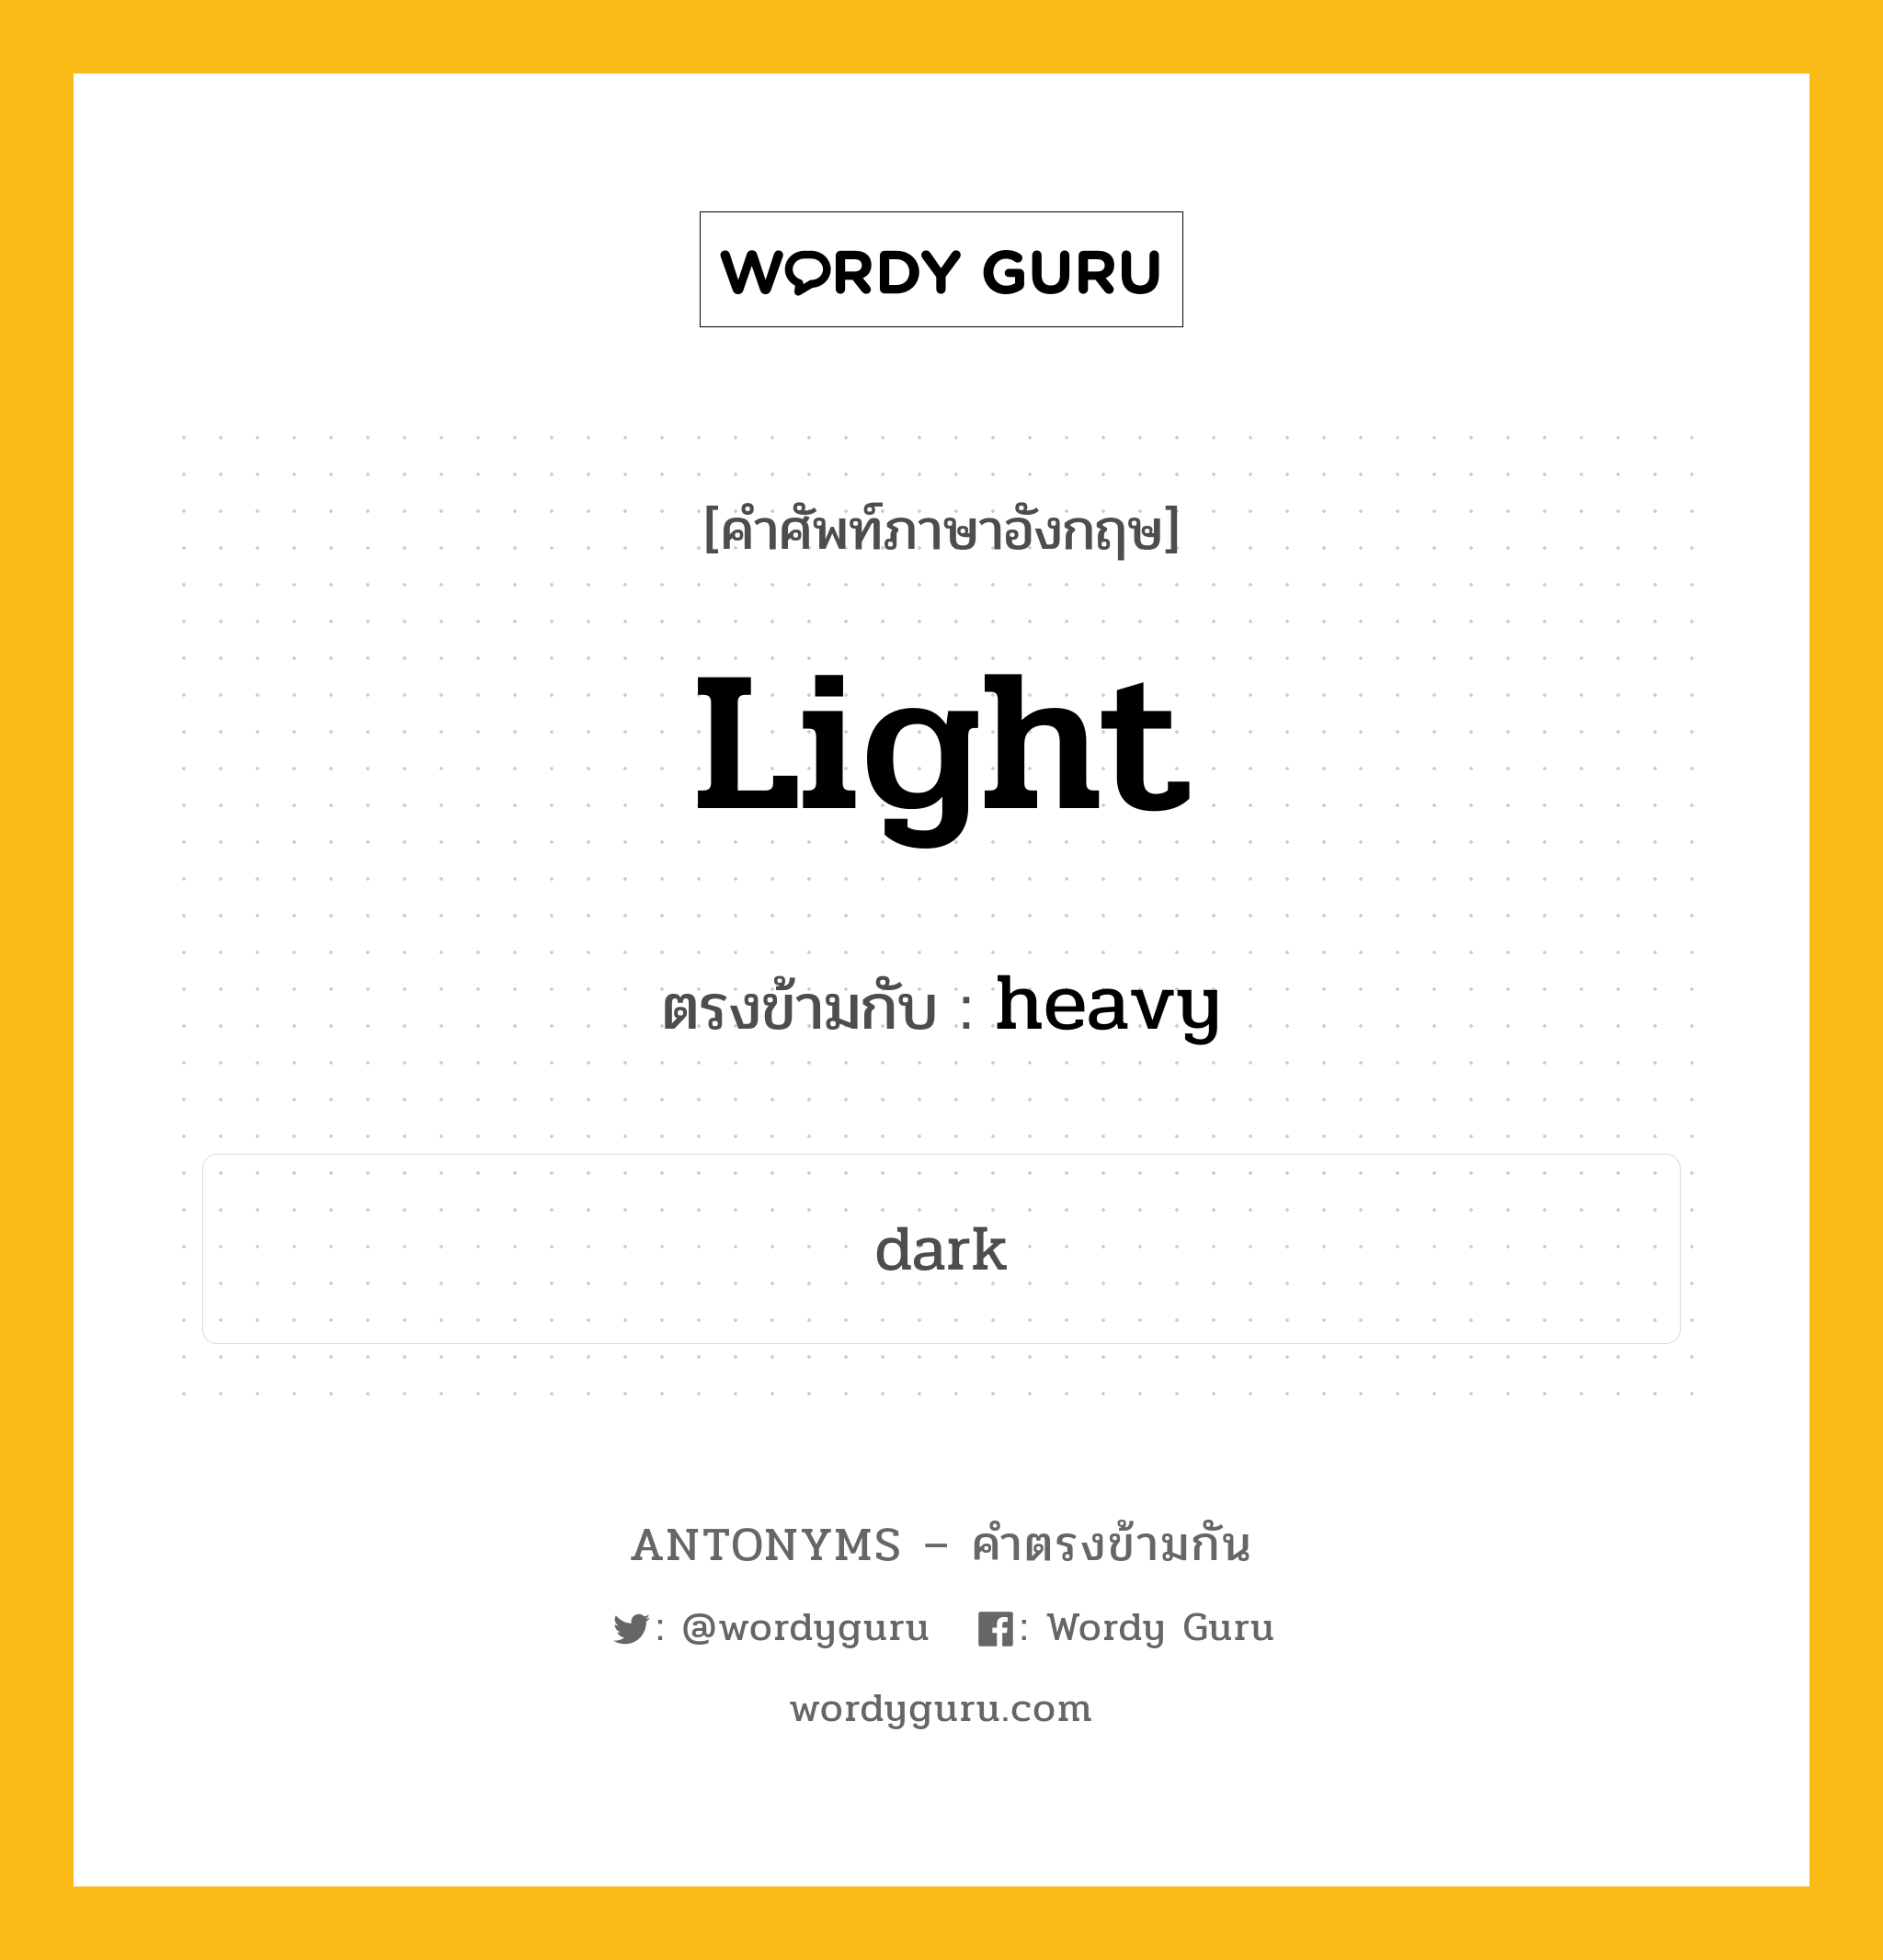 light เป็นคำตรงข้ามกับคำไหนบ้าง?, คำศัพท์ภาษาอังกฤษ light ตรงข้ามกับ heavy หมวด heavy